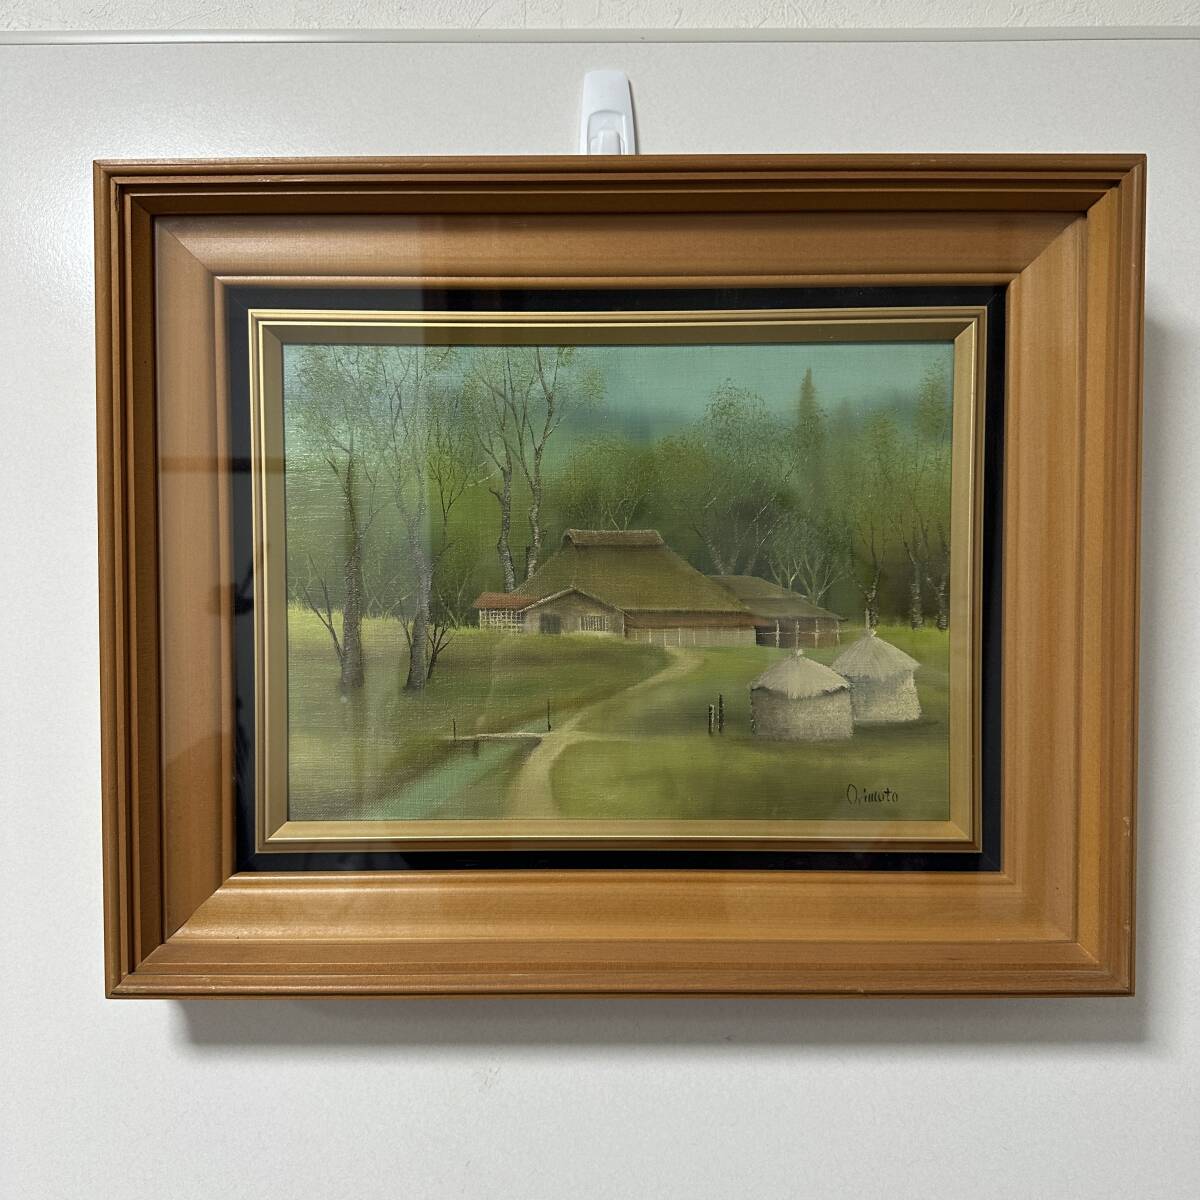 [असली] माइनको ओरिमोटो ओगावा 2nd शुनरीयू प्रदर्शनी F4 आकार पेंटिंग ललित कला (RA-006), चित्रकारी, तैल चित्र, प्रकृति, परिदृश्य चित्रकला